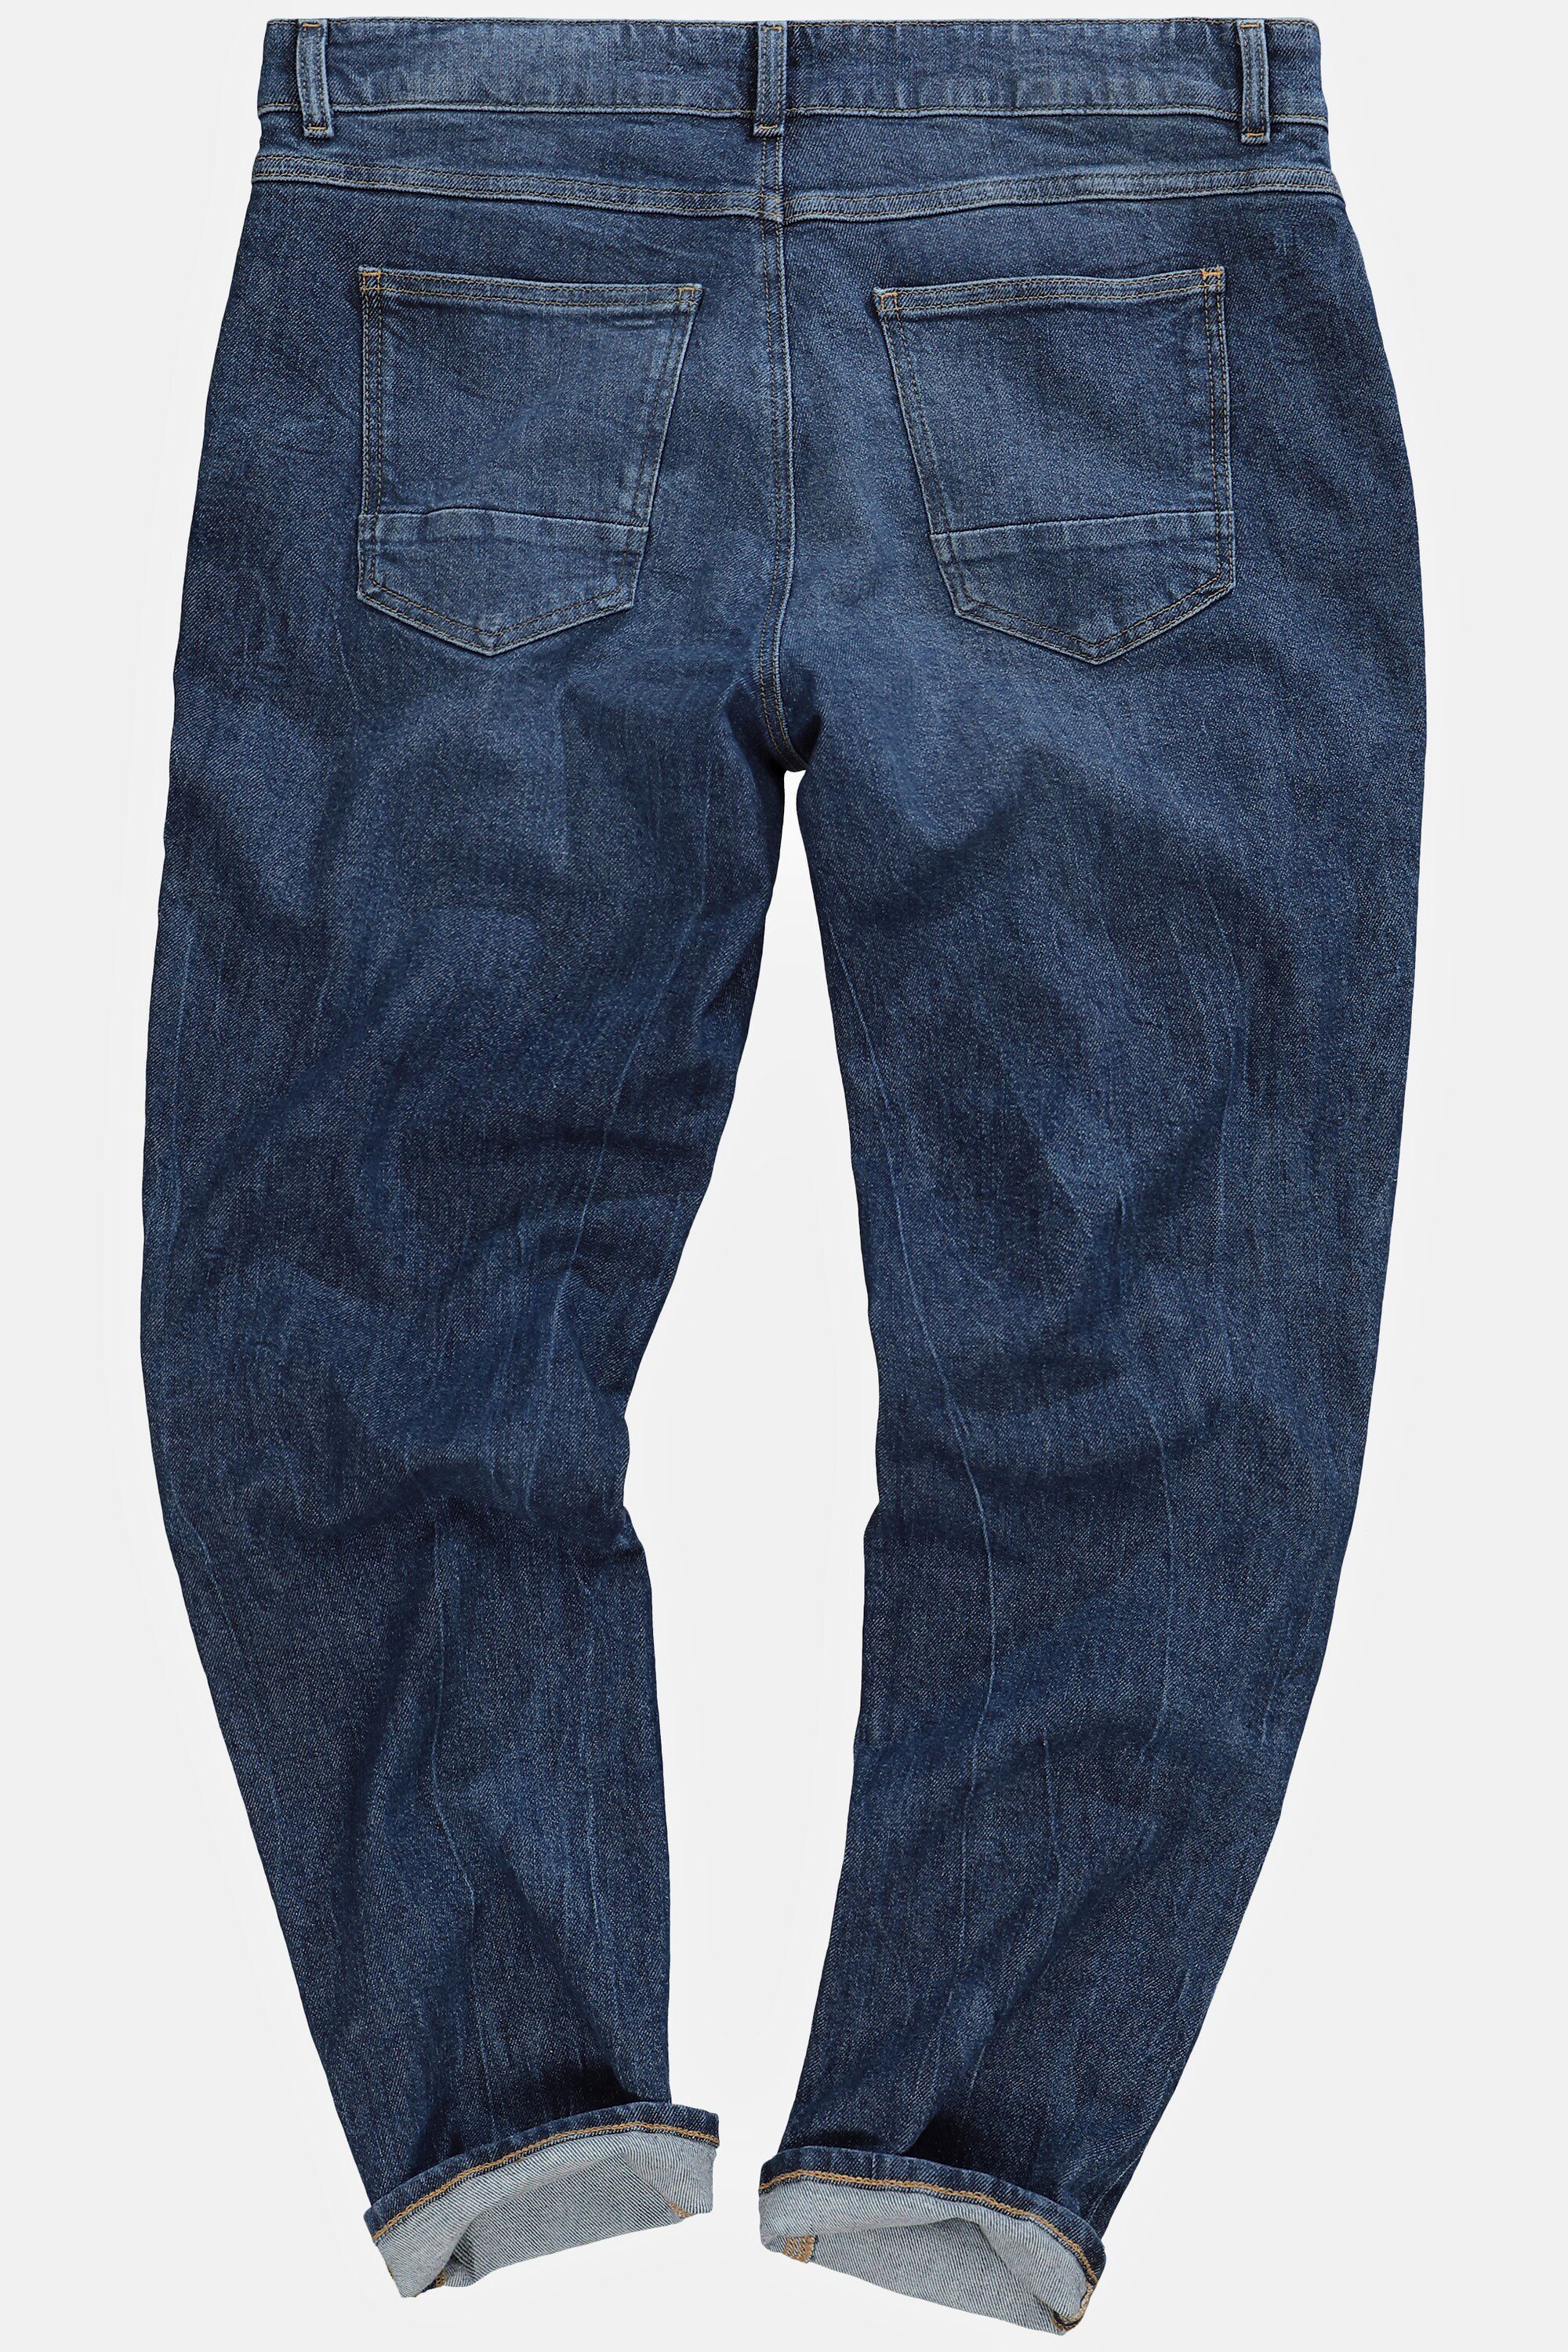 STHUGE Loose Denim Gr. 72 Fit STHUGE 5-Pocket-Jeans bis Jeans 5-Pocket